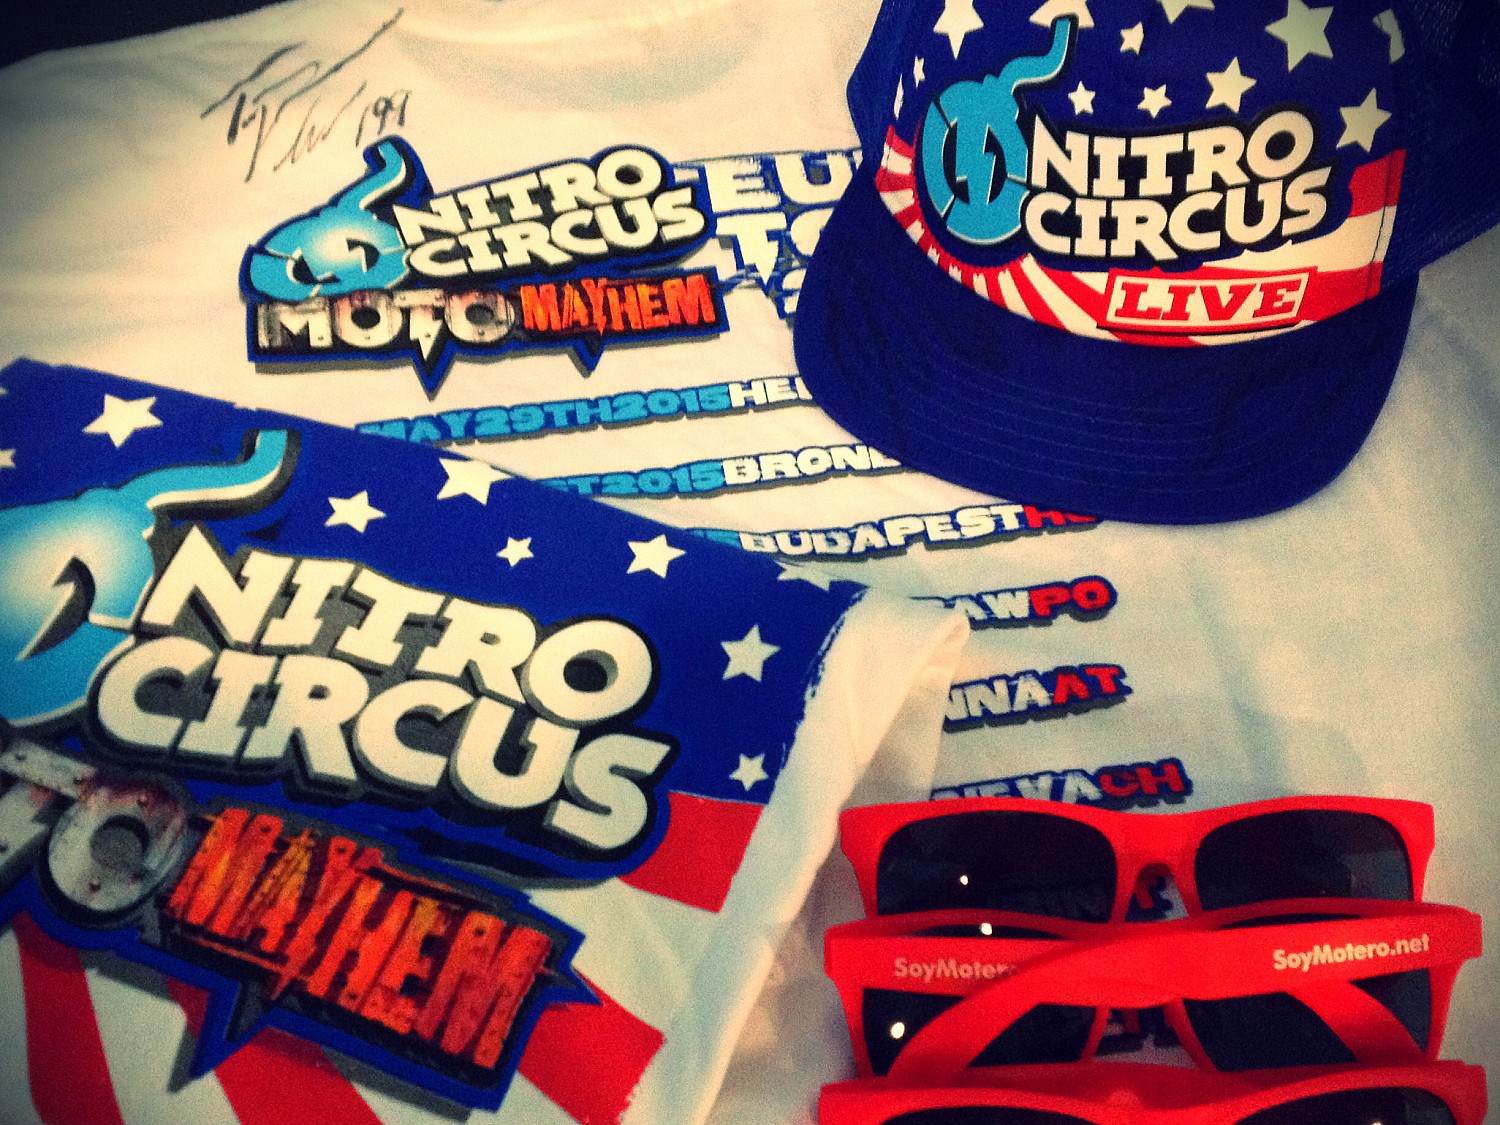 Necesario Salto apertura Nitro Circus Madrid 2015: sorteo de regalos